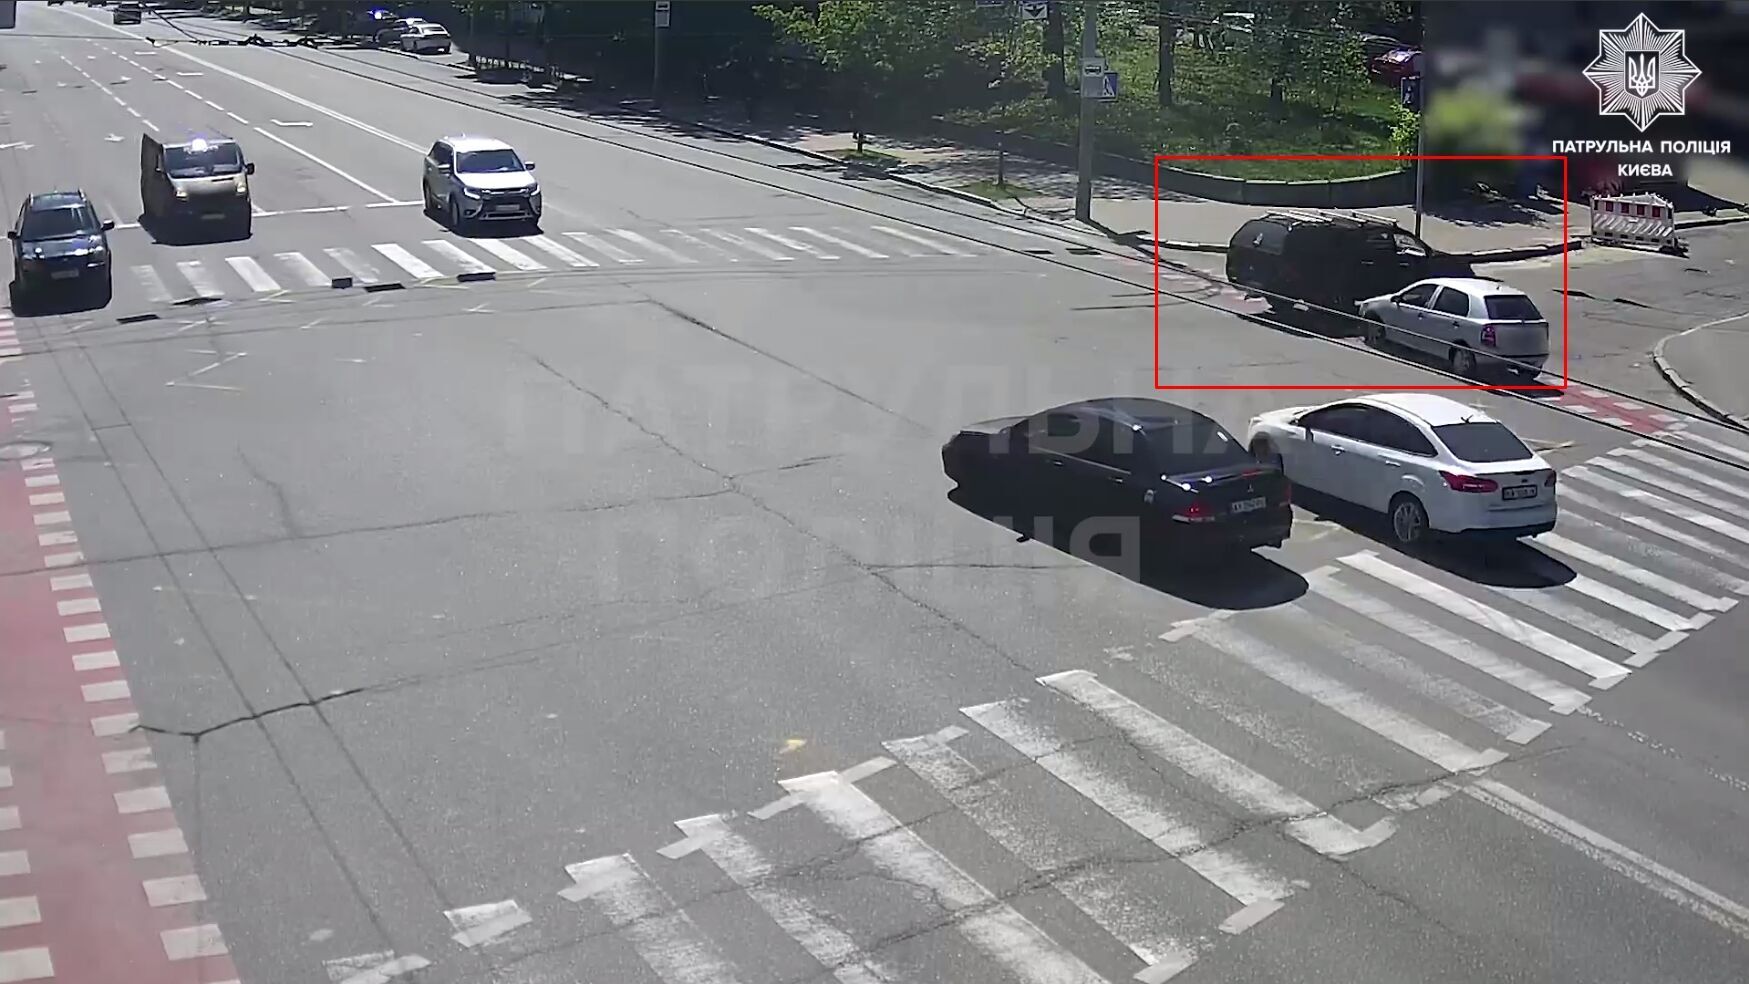 У Києві зіткнулись два легковика, одна з машин перекинулась: момент ДТП зафіксувала камера. Відео queiueiqueirdant